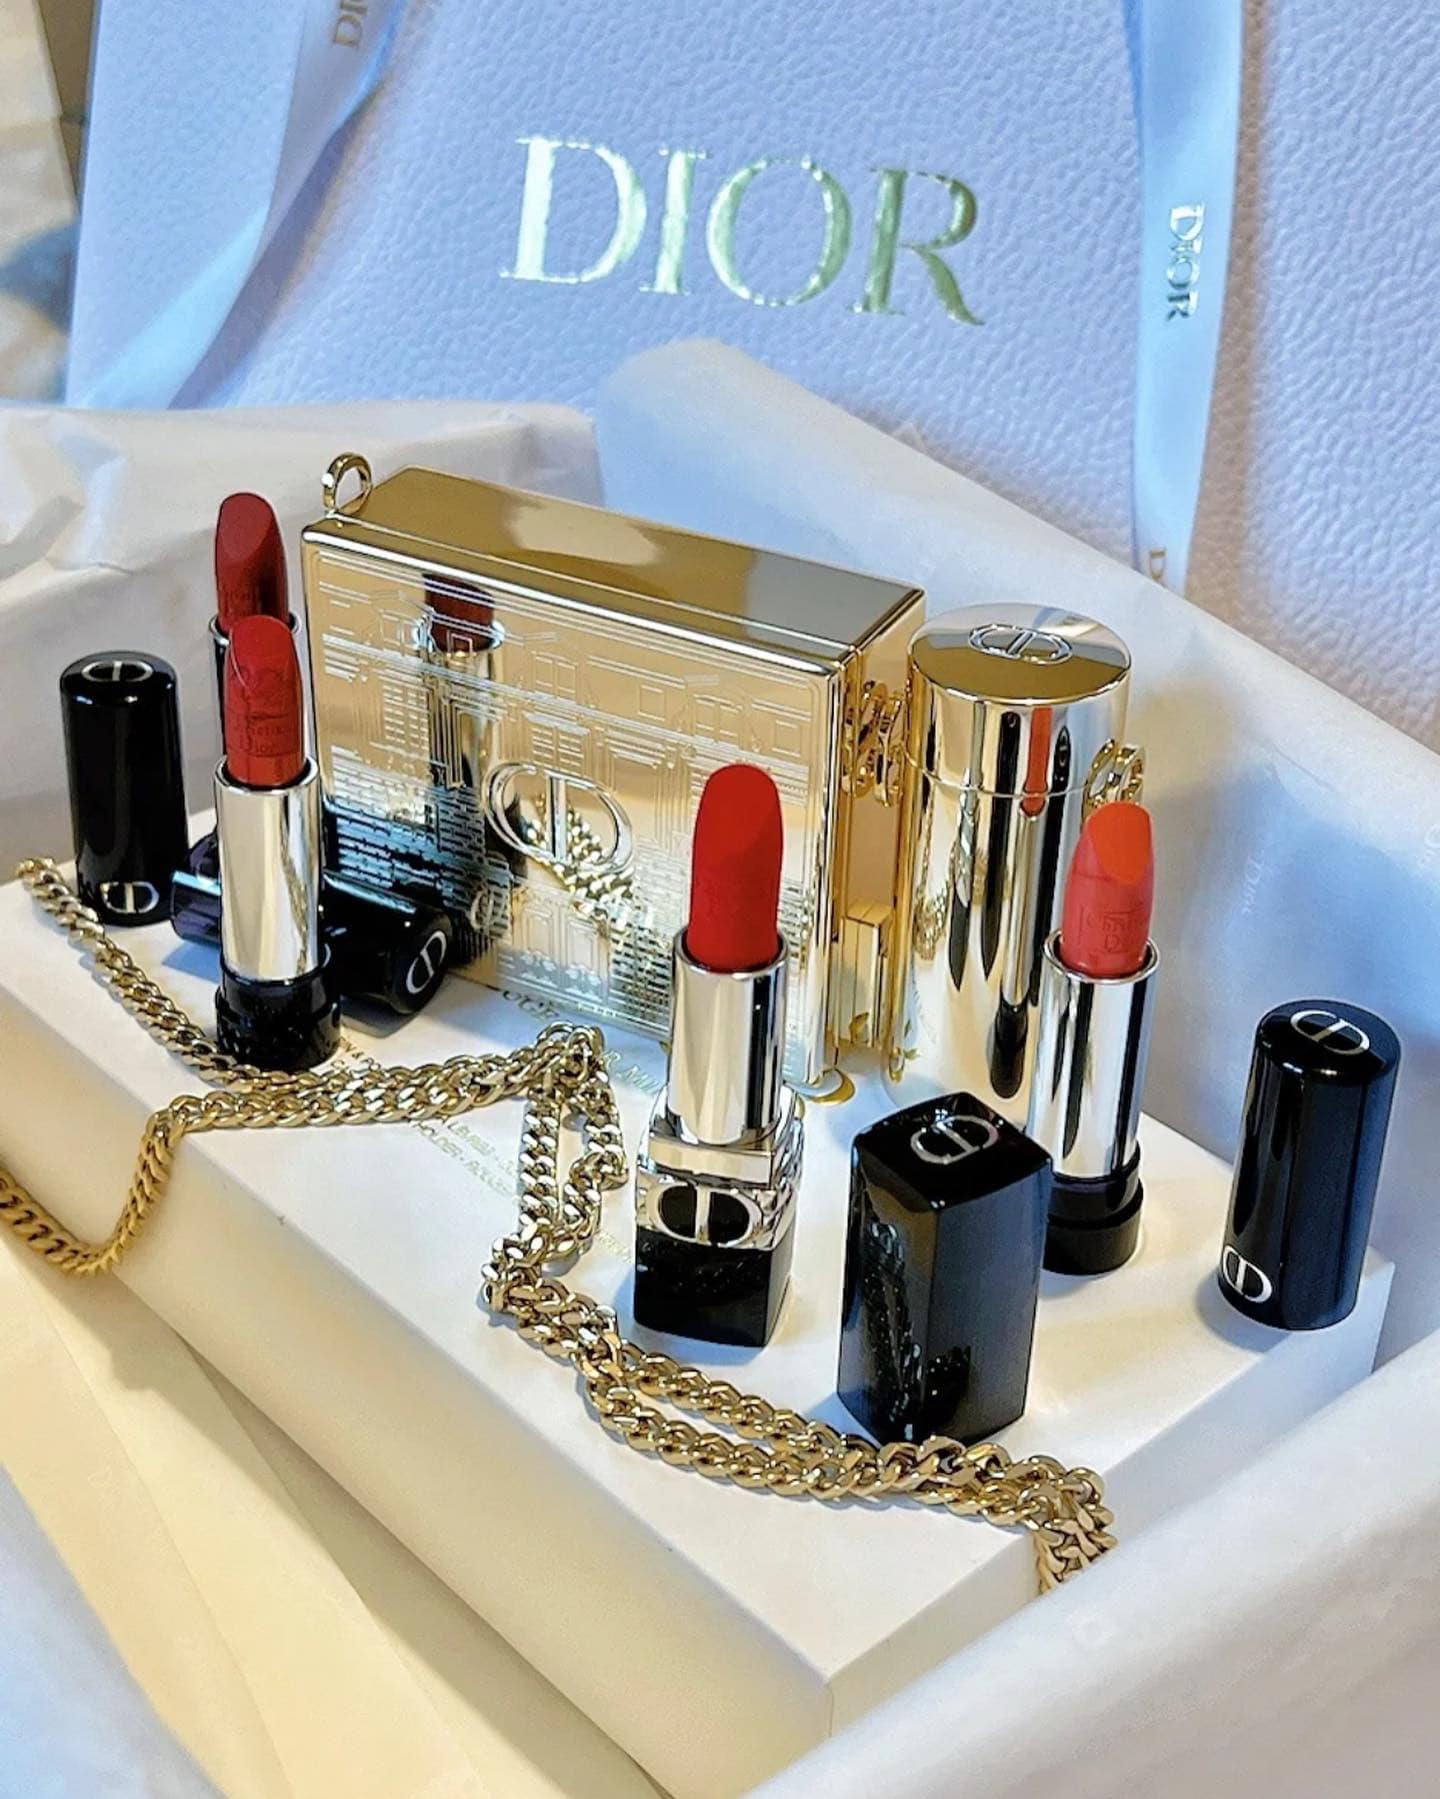 Set Son Dior Limited Edition 4 Mau 6 - Nuochoarosa.com - Nước hoa cao cấp, chính hãng giá tốt, mẫu mới